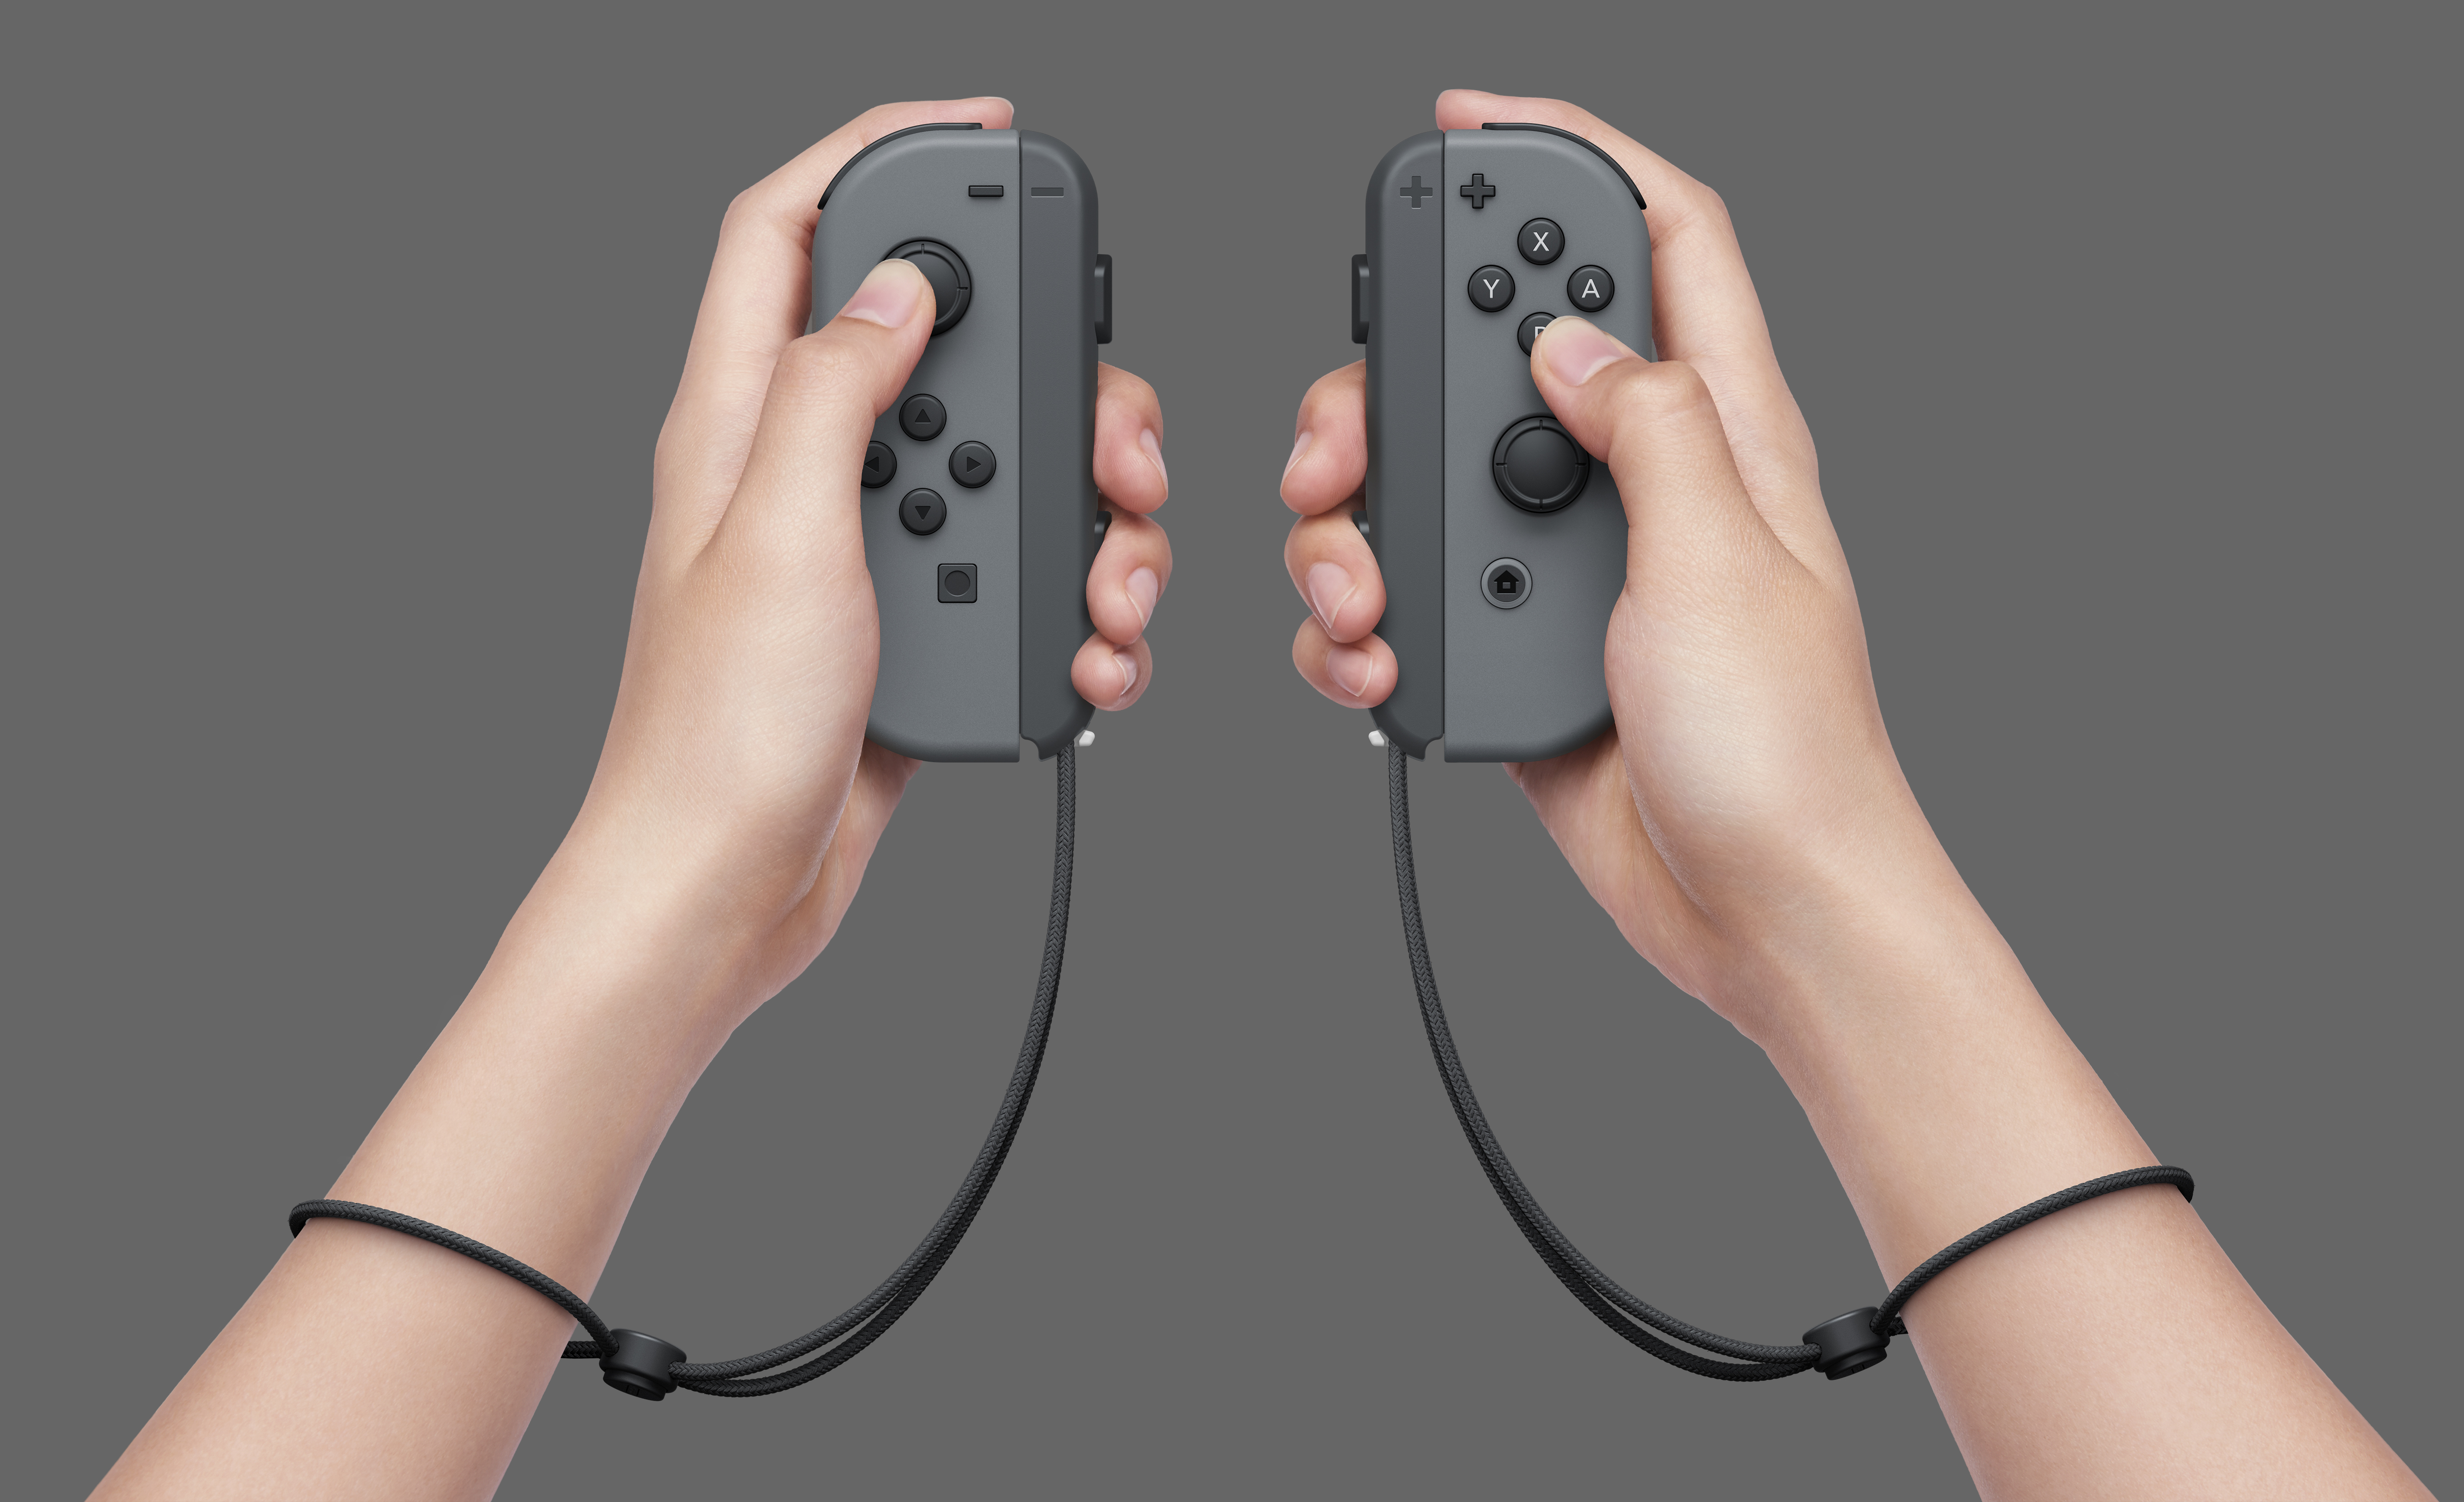 未開封】Nintendo Switch Joy-Con(L)/(R) グレー-